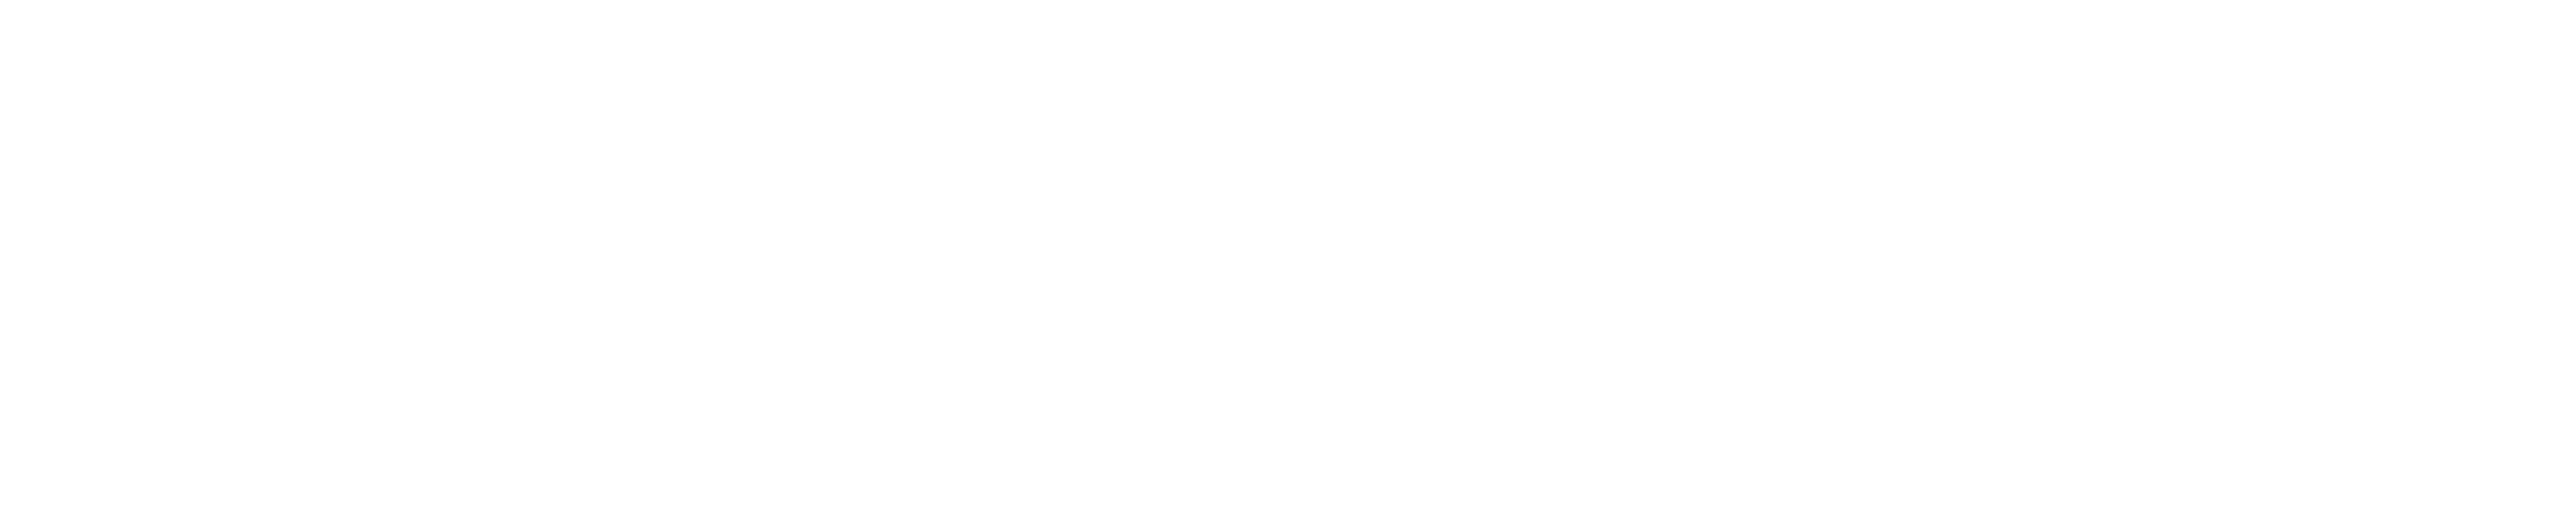 Bak-logo-white.png